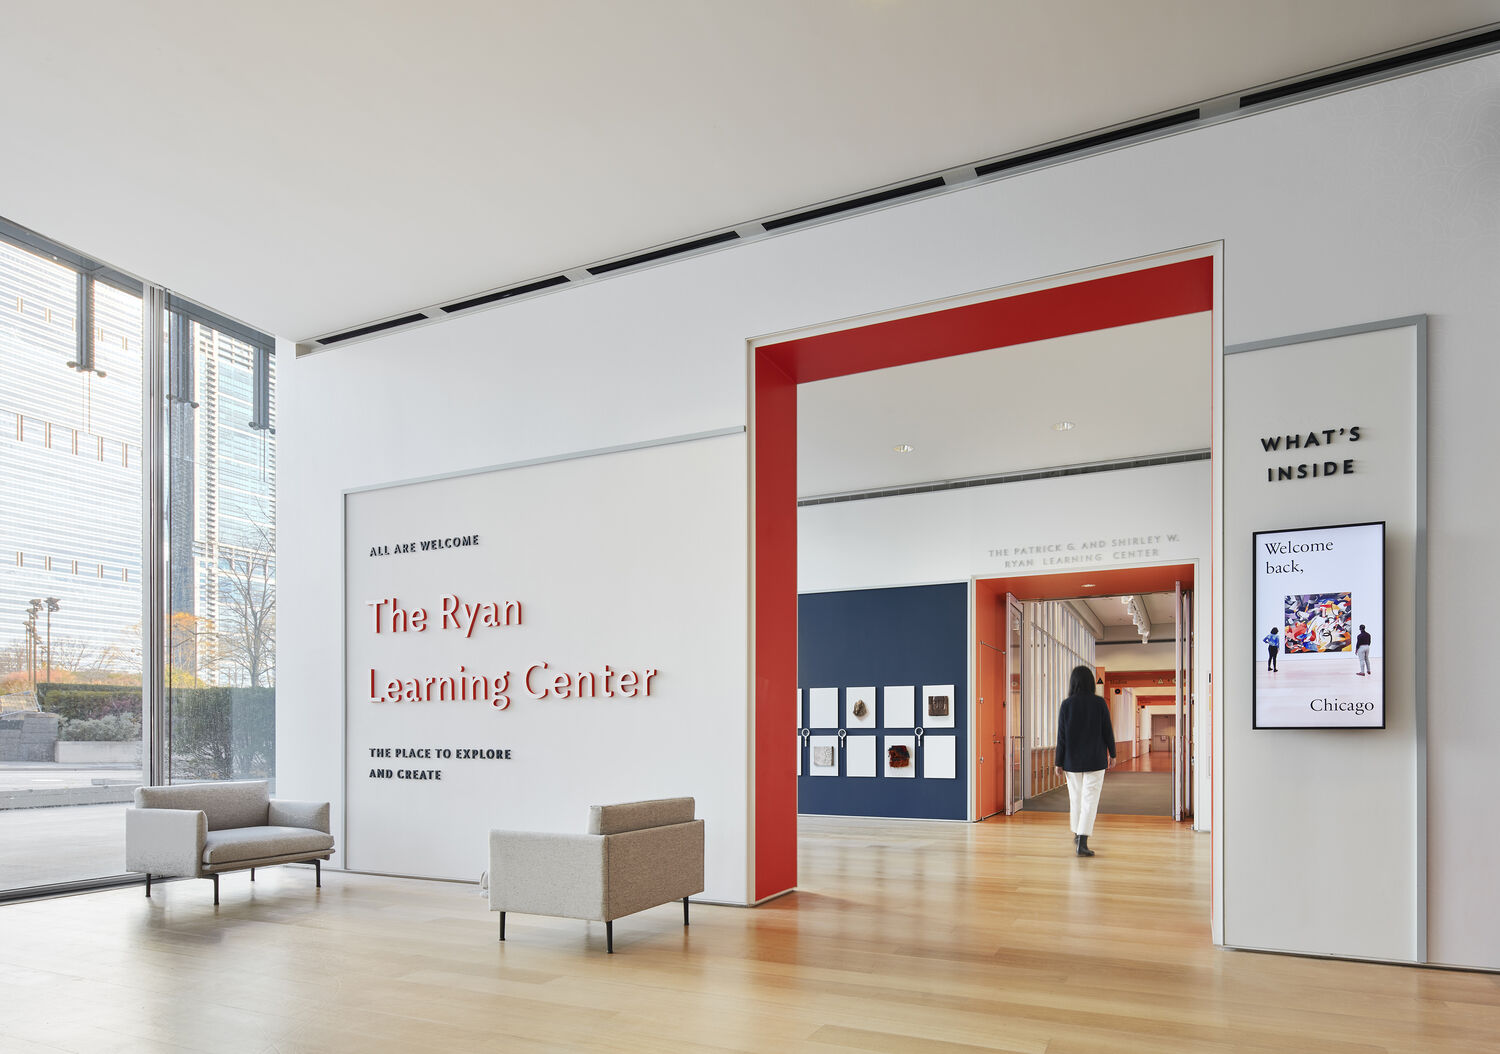 Ryan Learning Center, Art Institute of Chicago